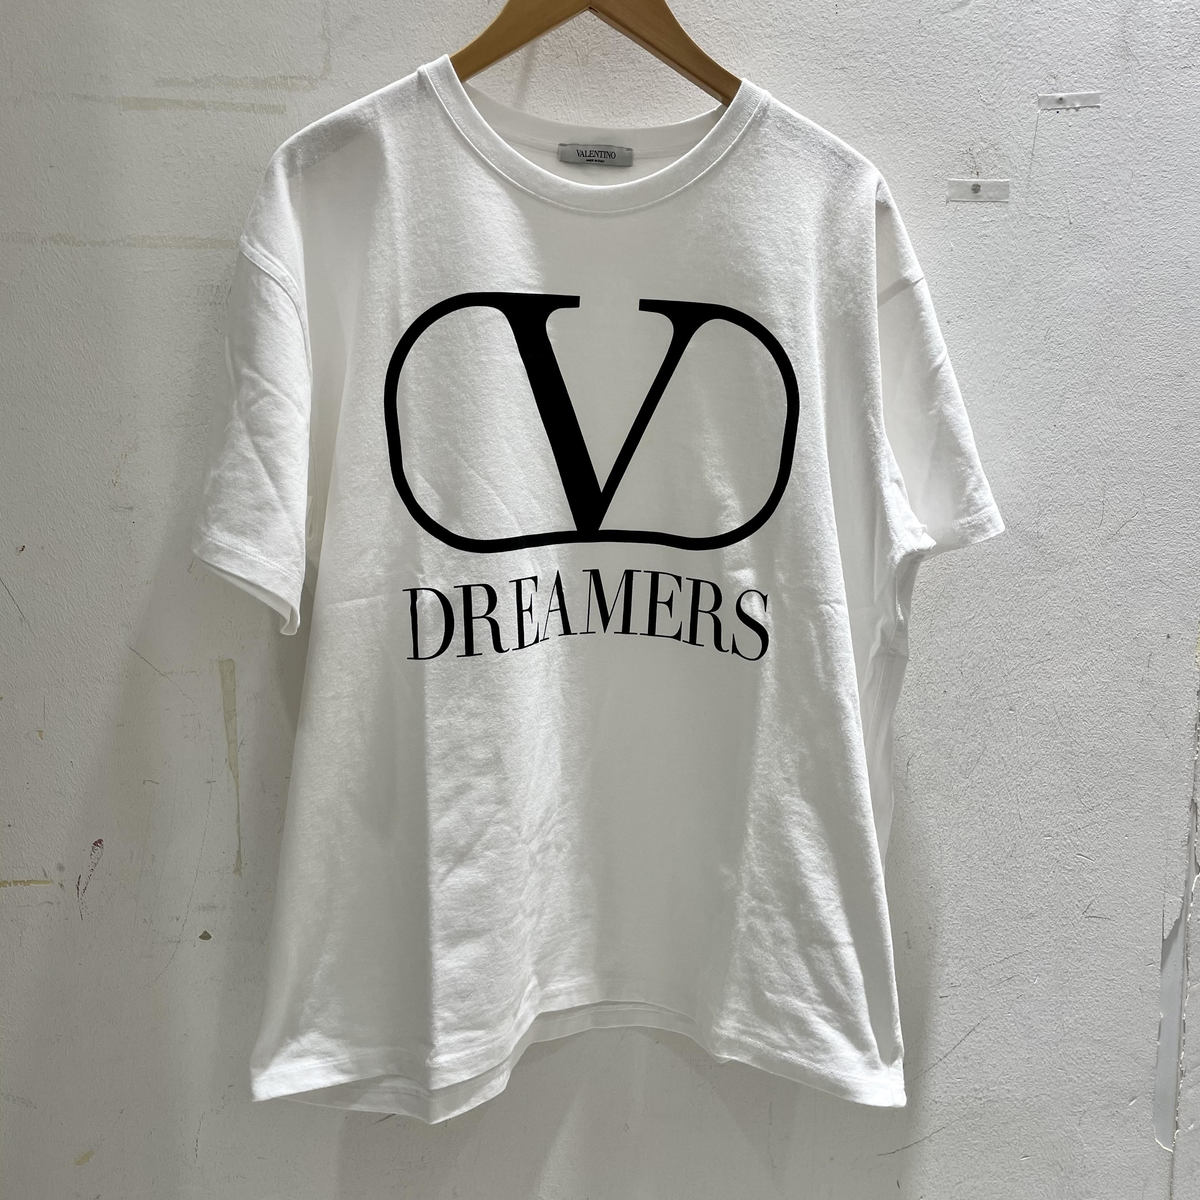 ヴァレンティノのホワイト 2020年春夏 DREAMERS プリントTシャツの買取実績です。